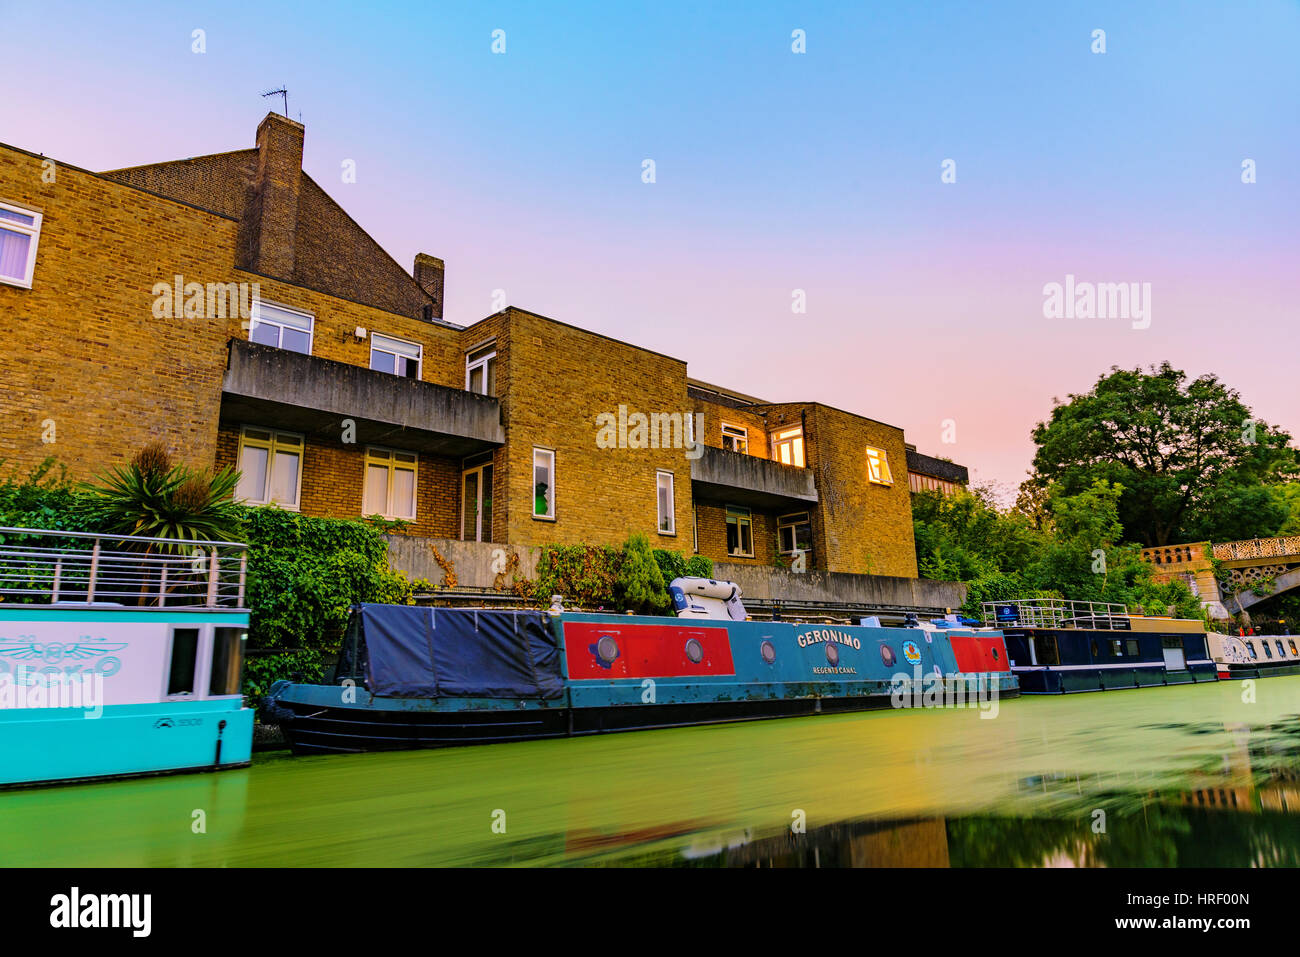 Londres - 16 de julio de 2016: Riverside Apartments con barco casas de noche a lo largo del Parque Regents Canal, que es una famosa vía fluvial en julio de 2016 en Londres. Foto de stock